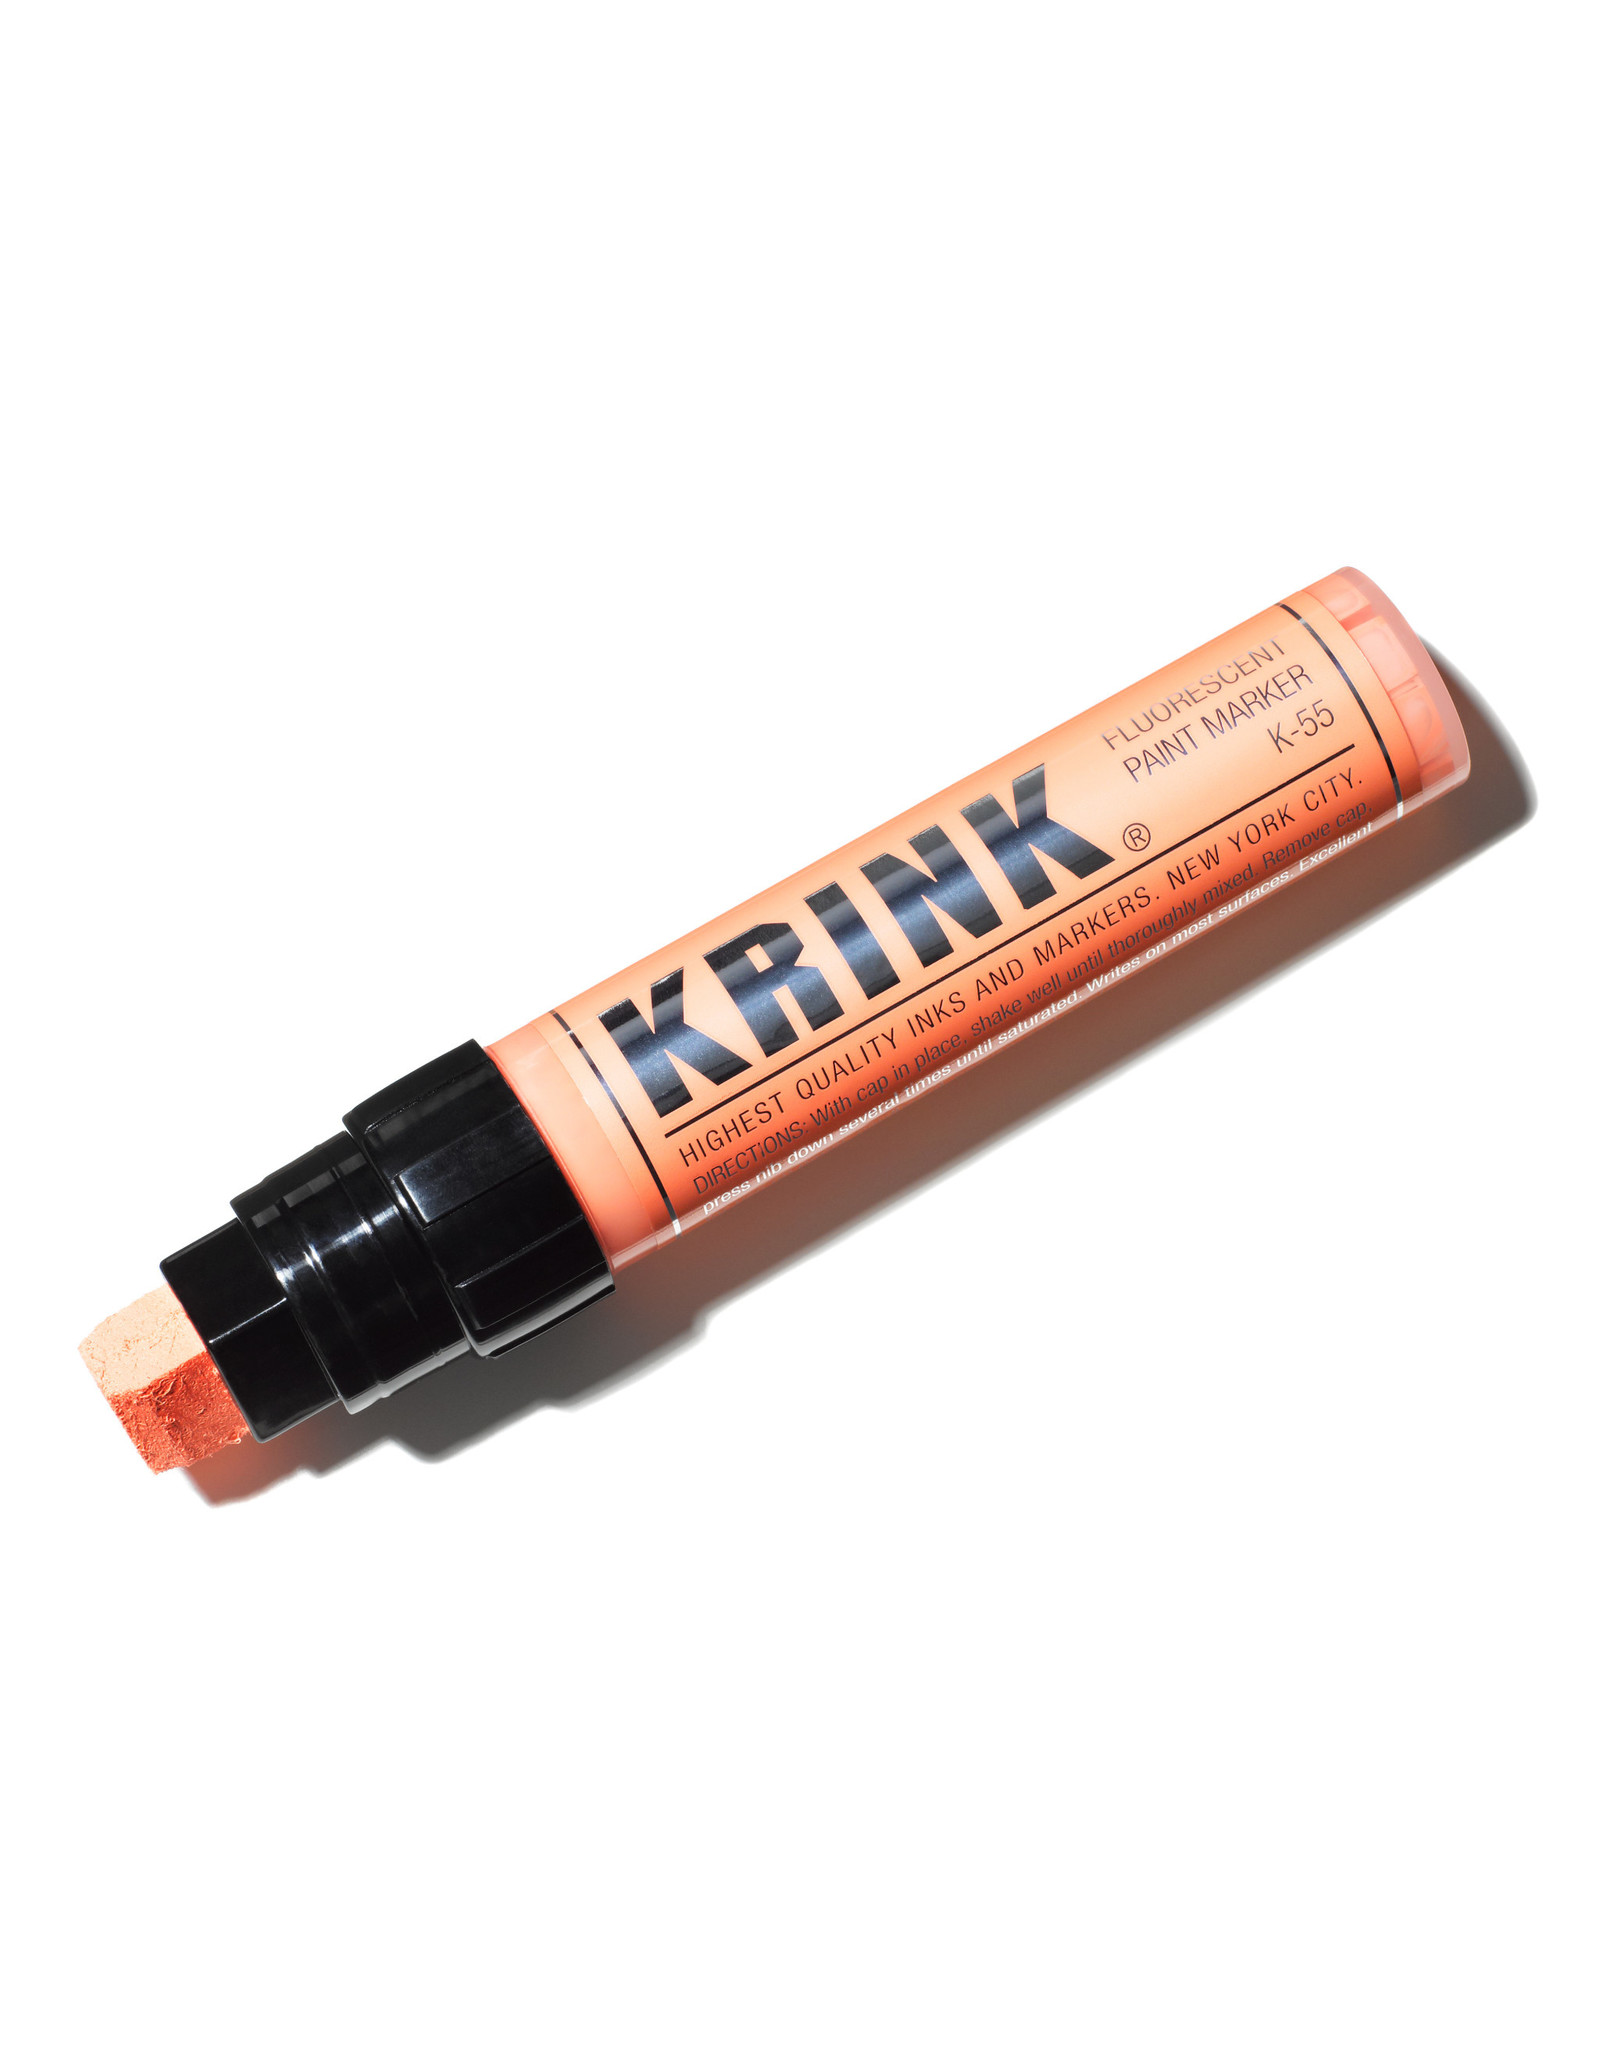 Krink Krink K-55 Acrylic Paint Marker, Orange